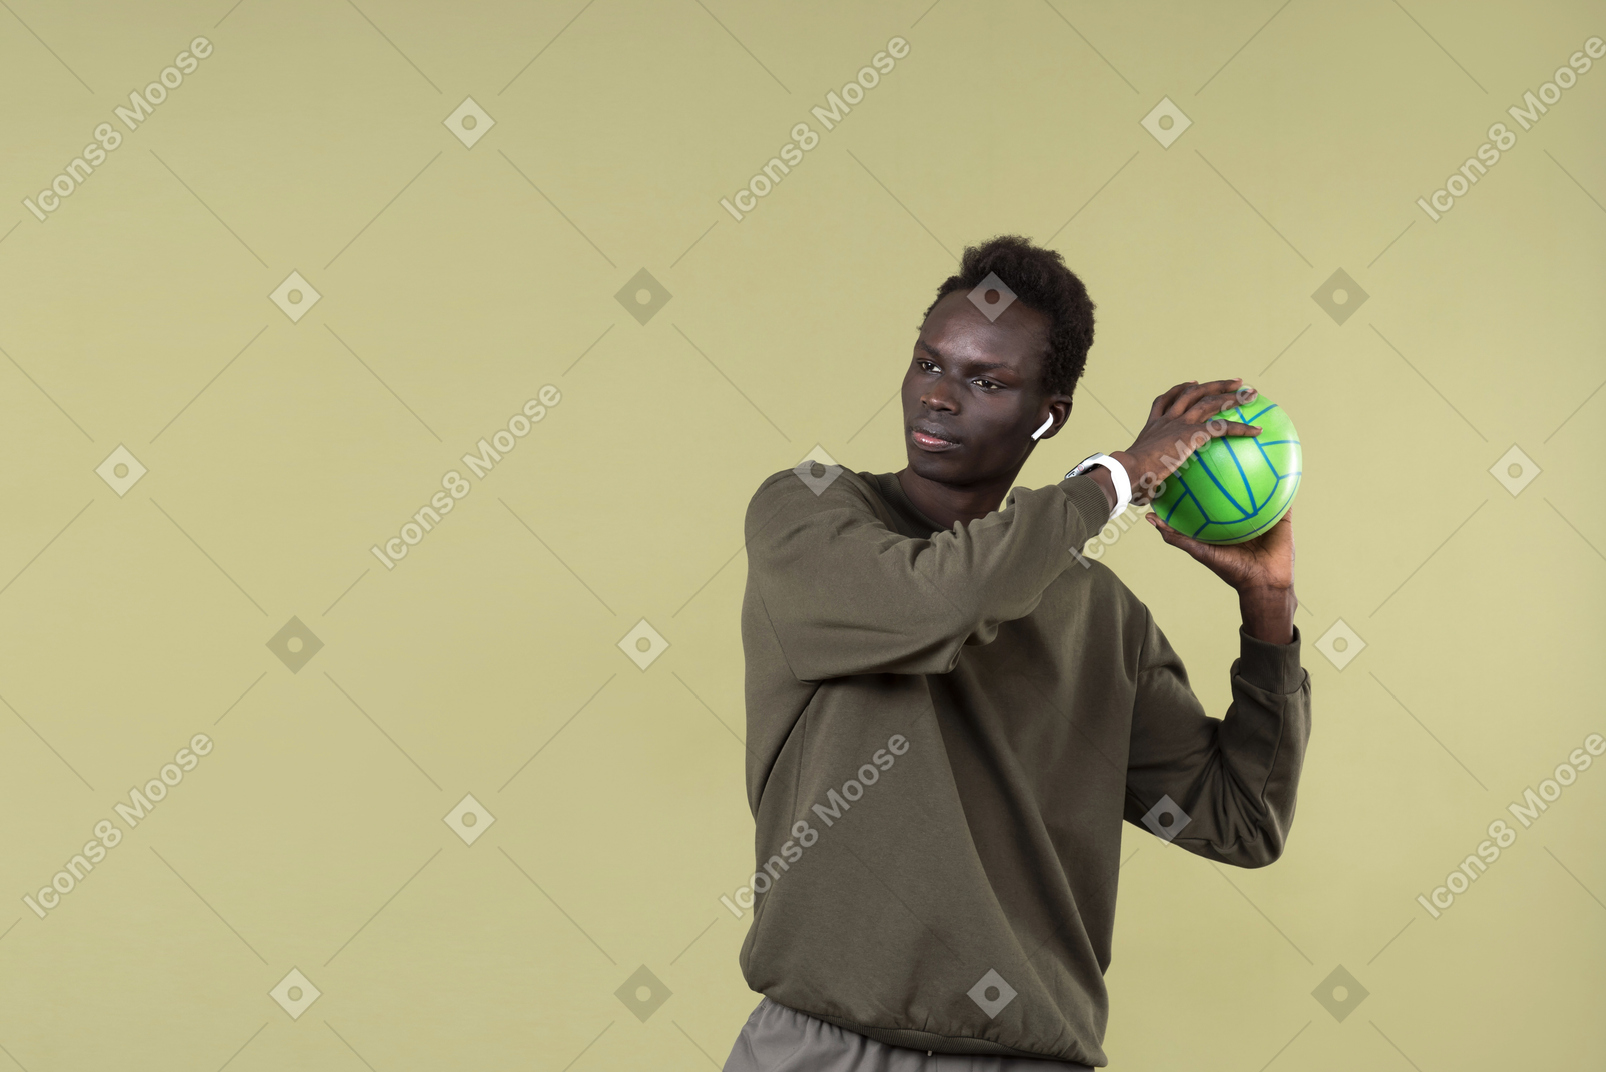 Giovane uomo di colore che indossa abiti casual, con airpods e smartwatch nel corso del suo allenamento